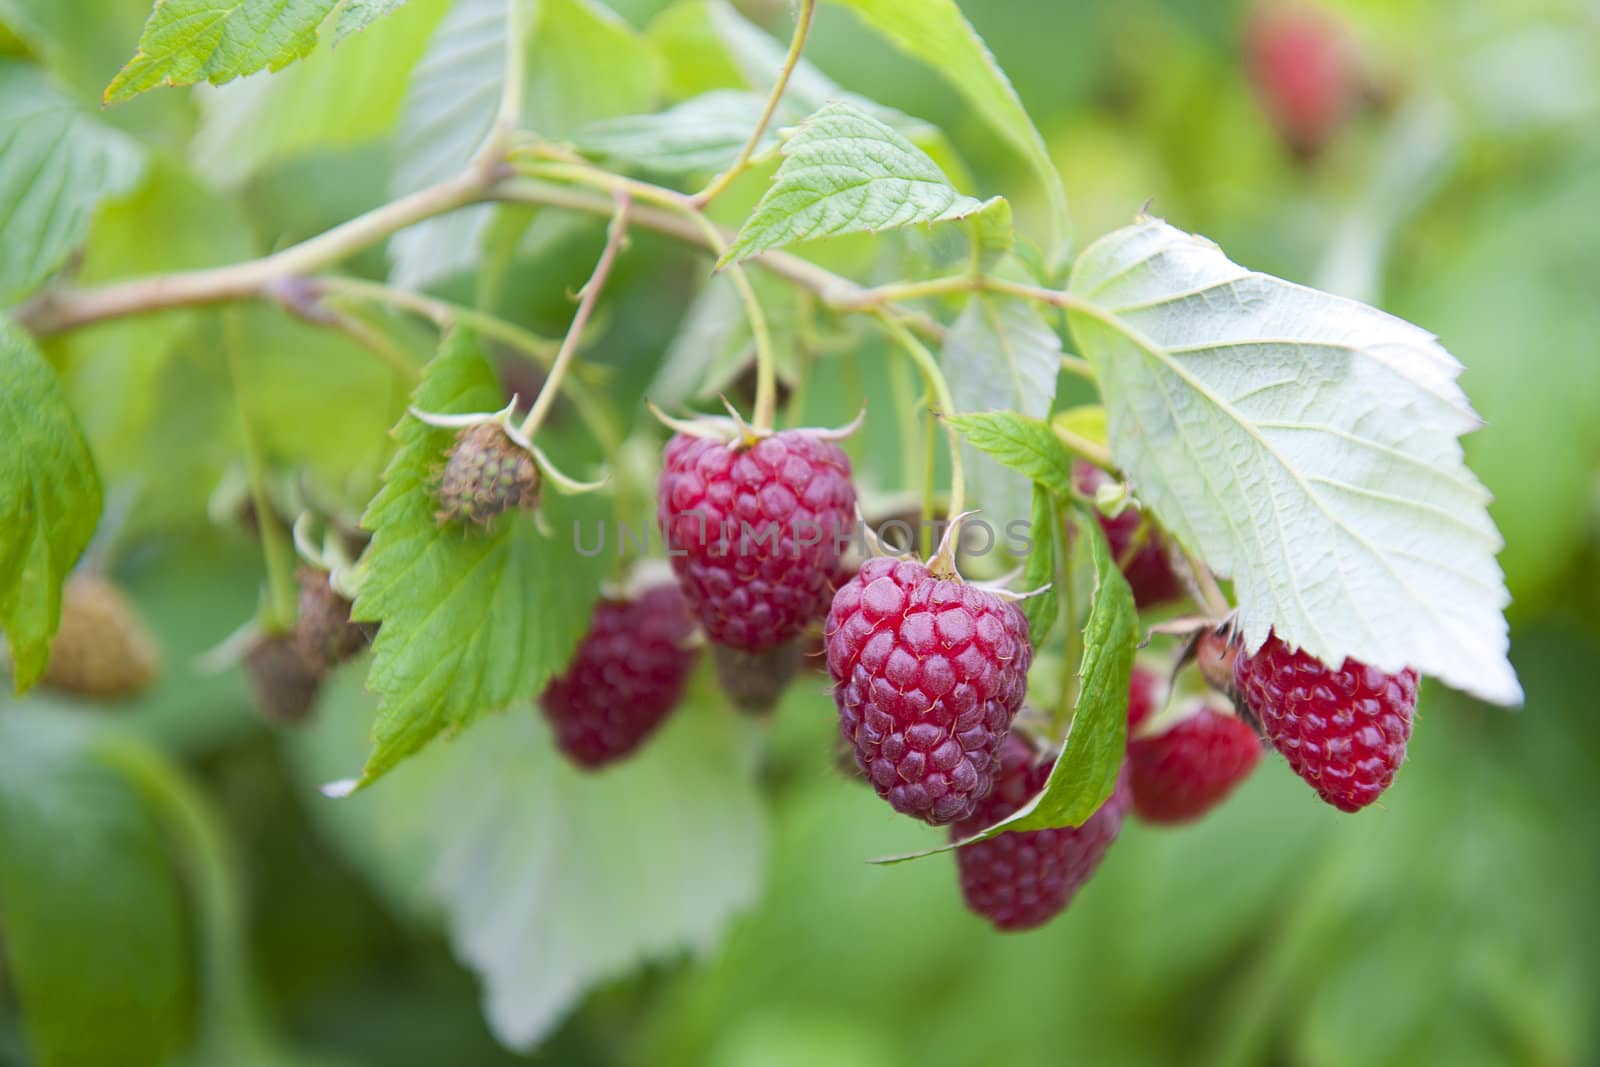 Sweet cultivating raspberries